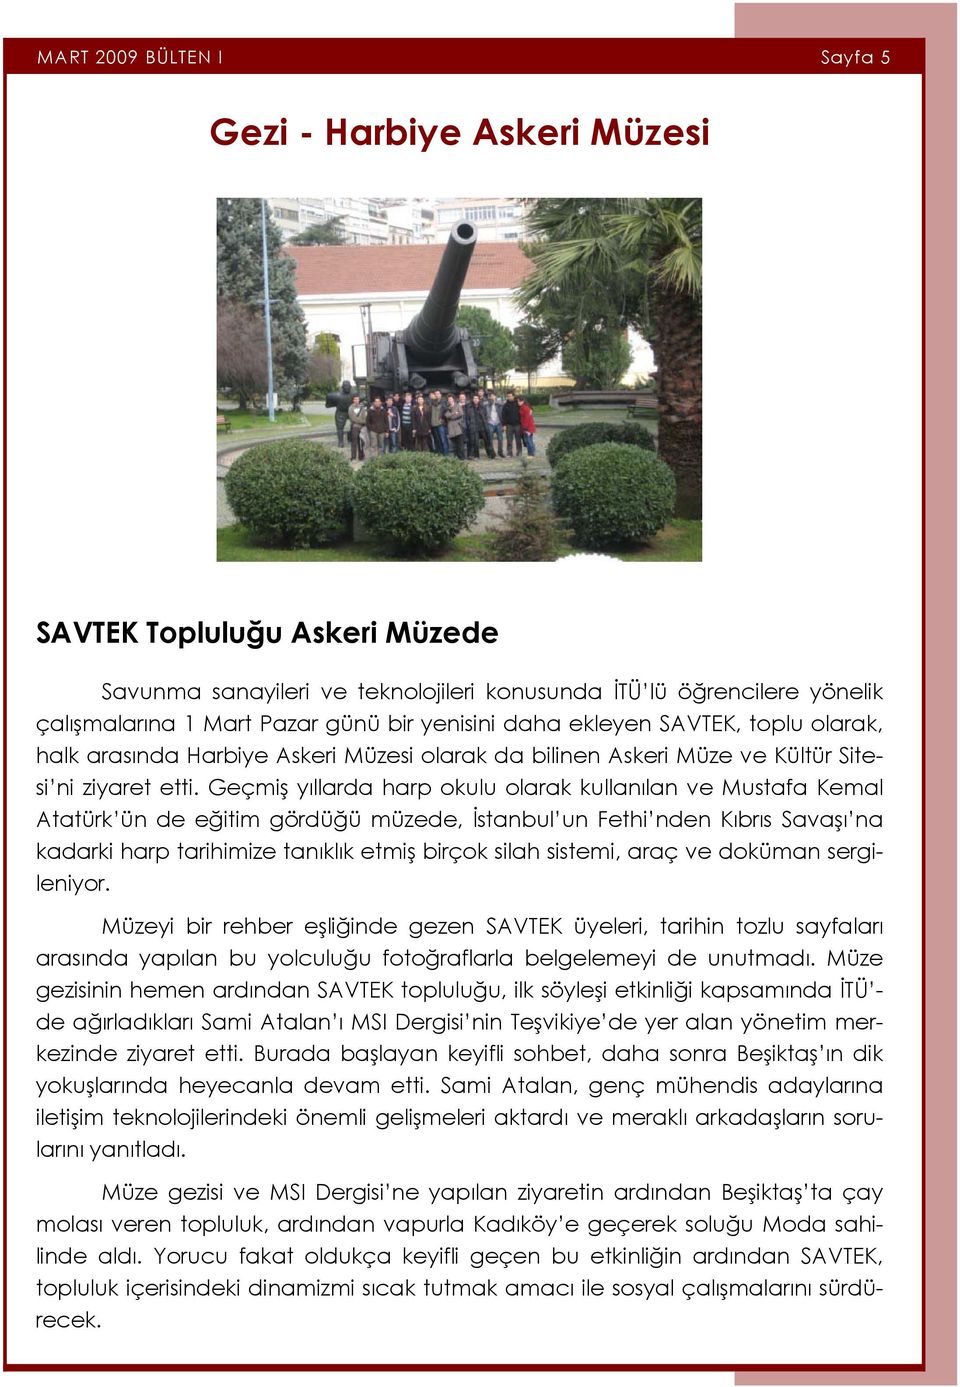 Geçmiş yıllarda harp okulu olarak kullanılan ve Mustafa Kemal Atatürk ün de eğitim gördüğü müzede, İstanbul un Fethi nden Kıbrıs Savaşı na kadarki harp tarihimize tanıklık etmiş birçok silah sistemi,